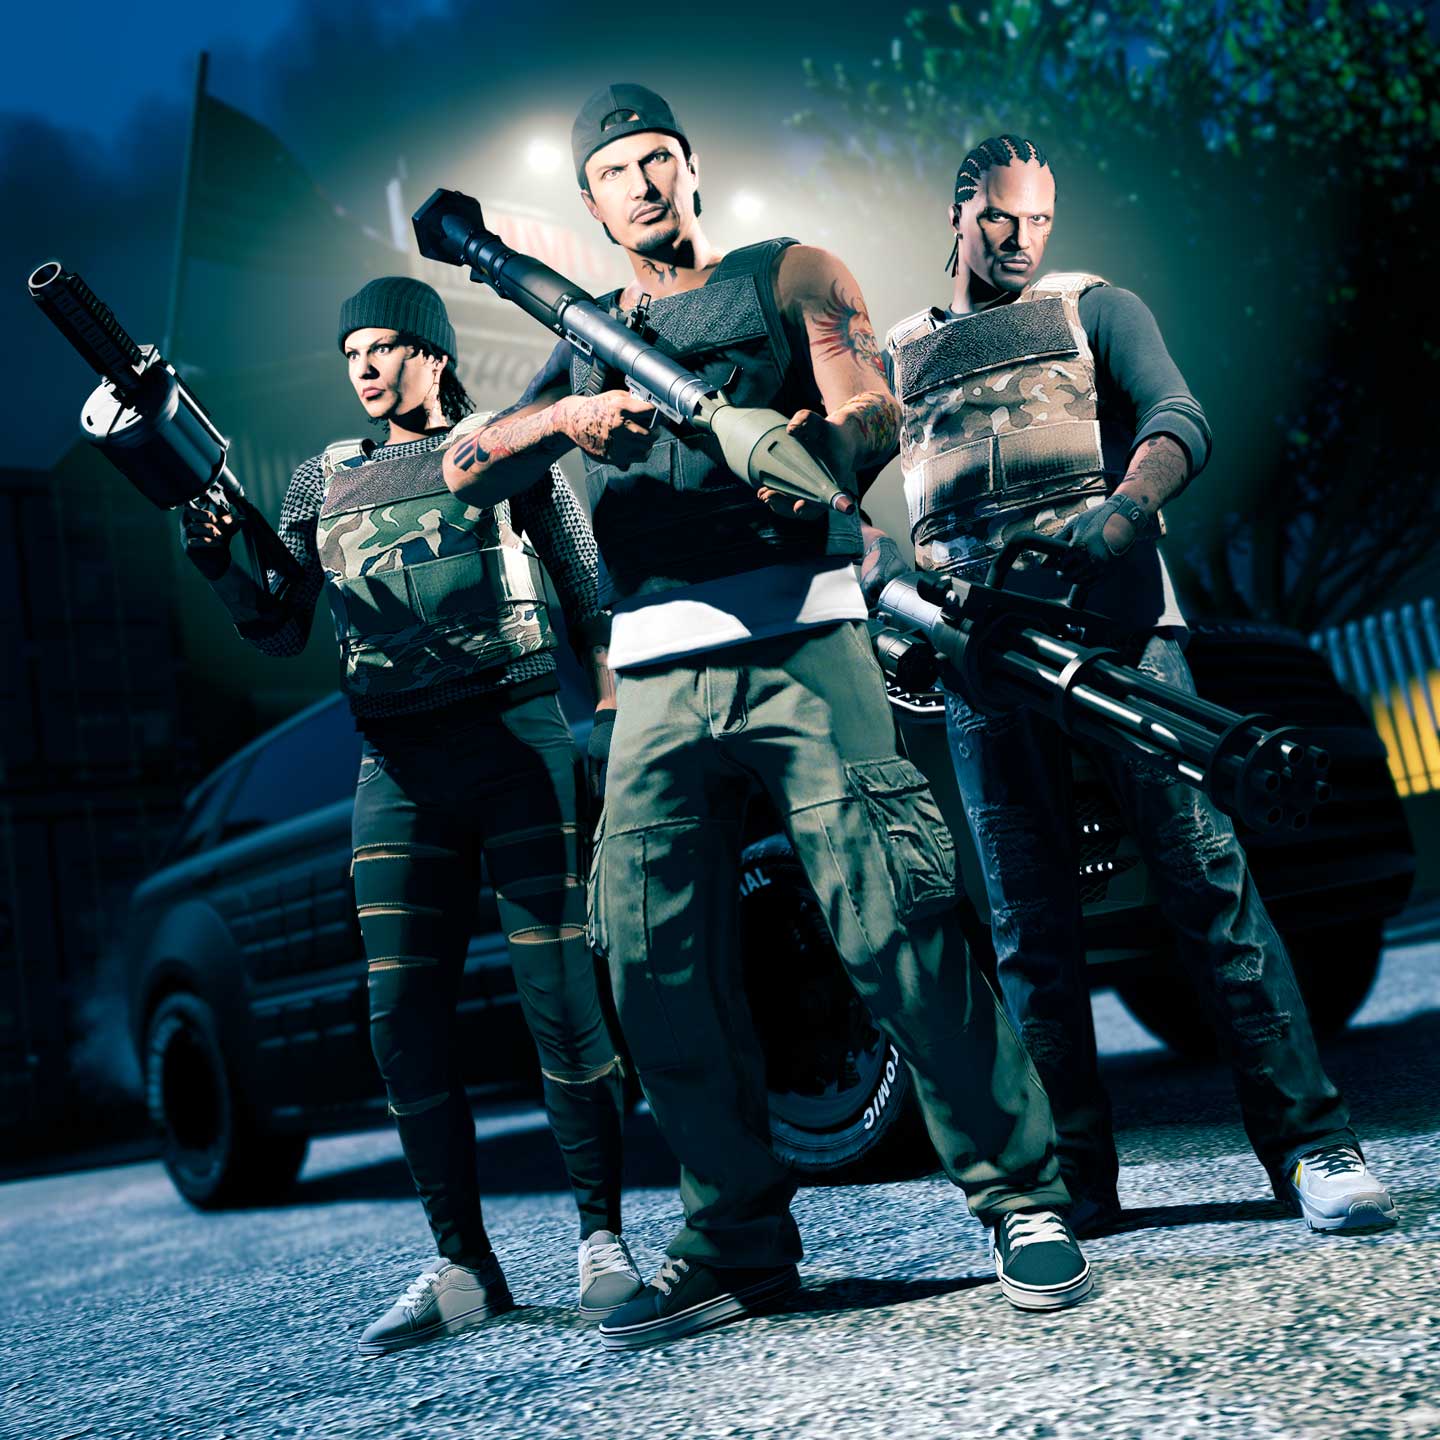 GTA Online: San Andreas Mercenaries is 2023's First Big Update